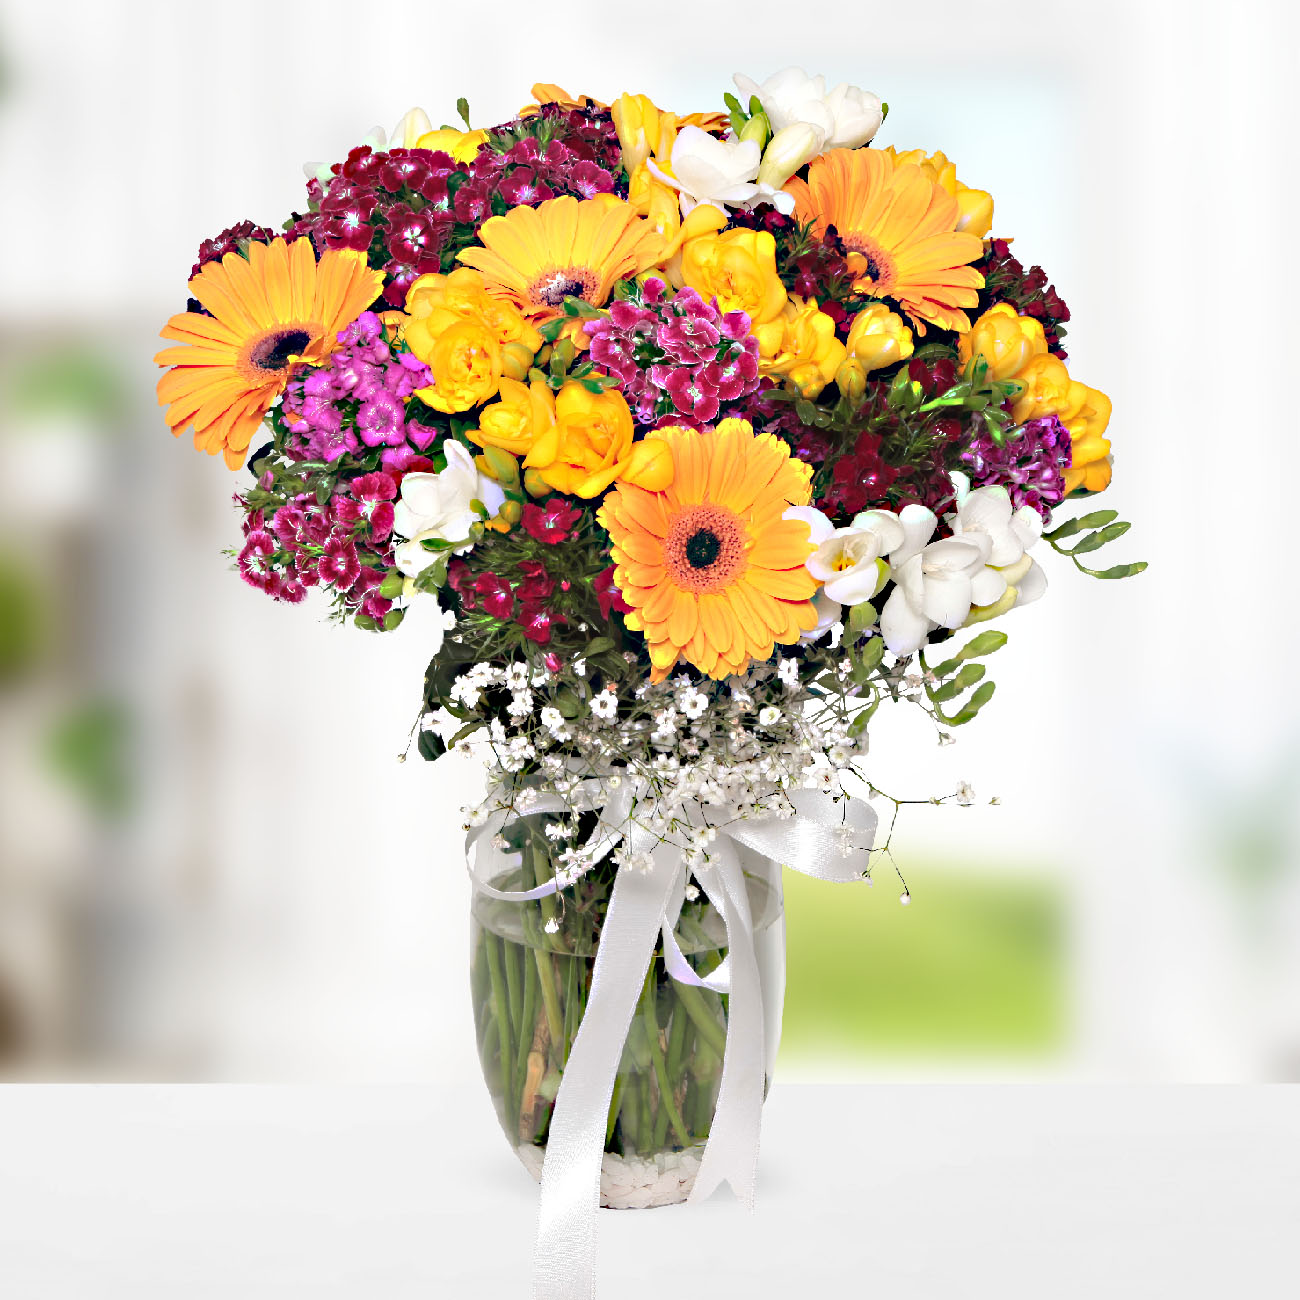 Send flowers Turkey, Seasonal Flowers of Turkey in Vase from 12USD